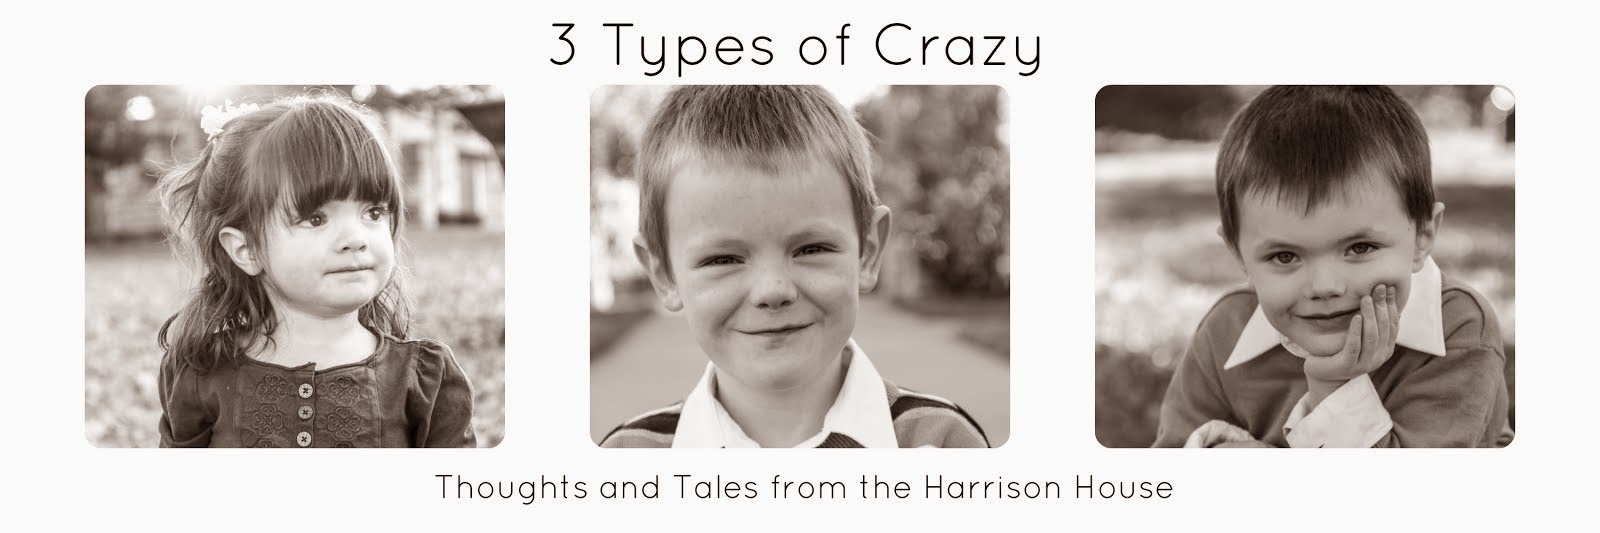 3 Types of Crazy